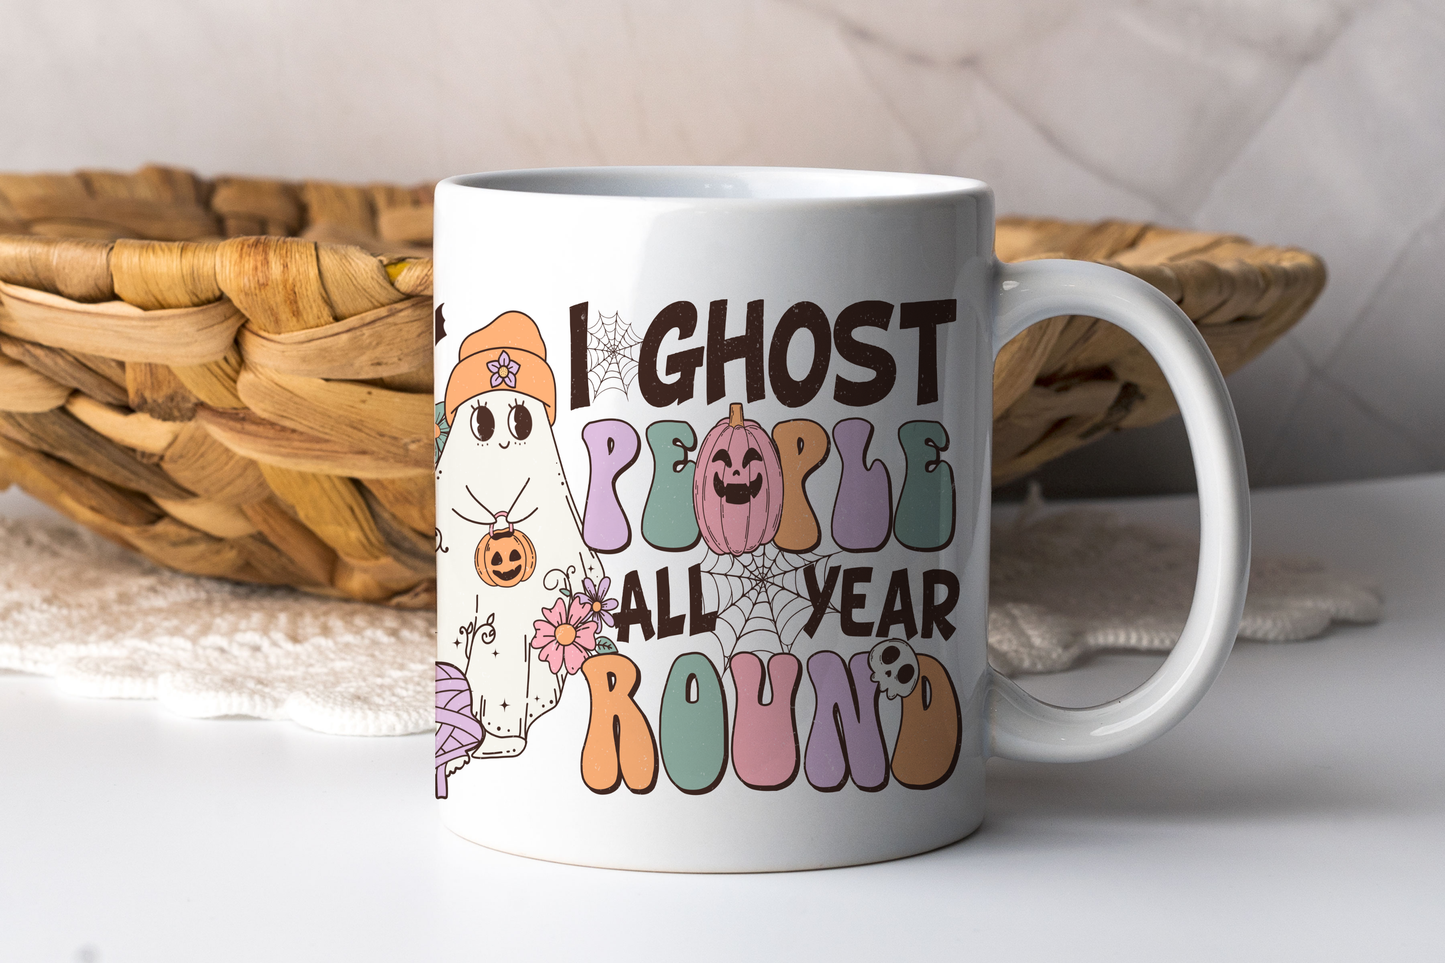 Mug - I ghost people